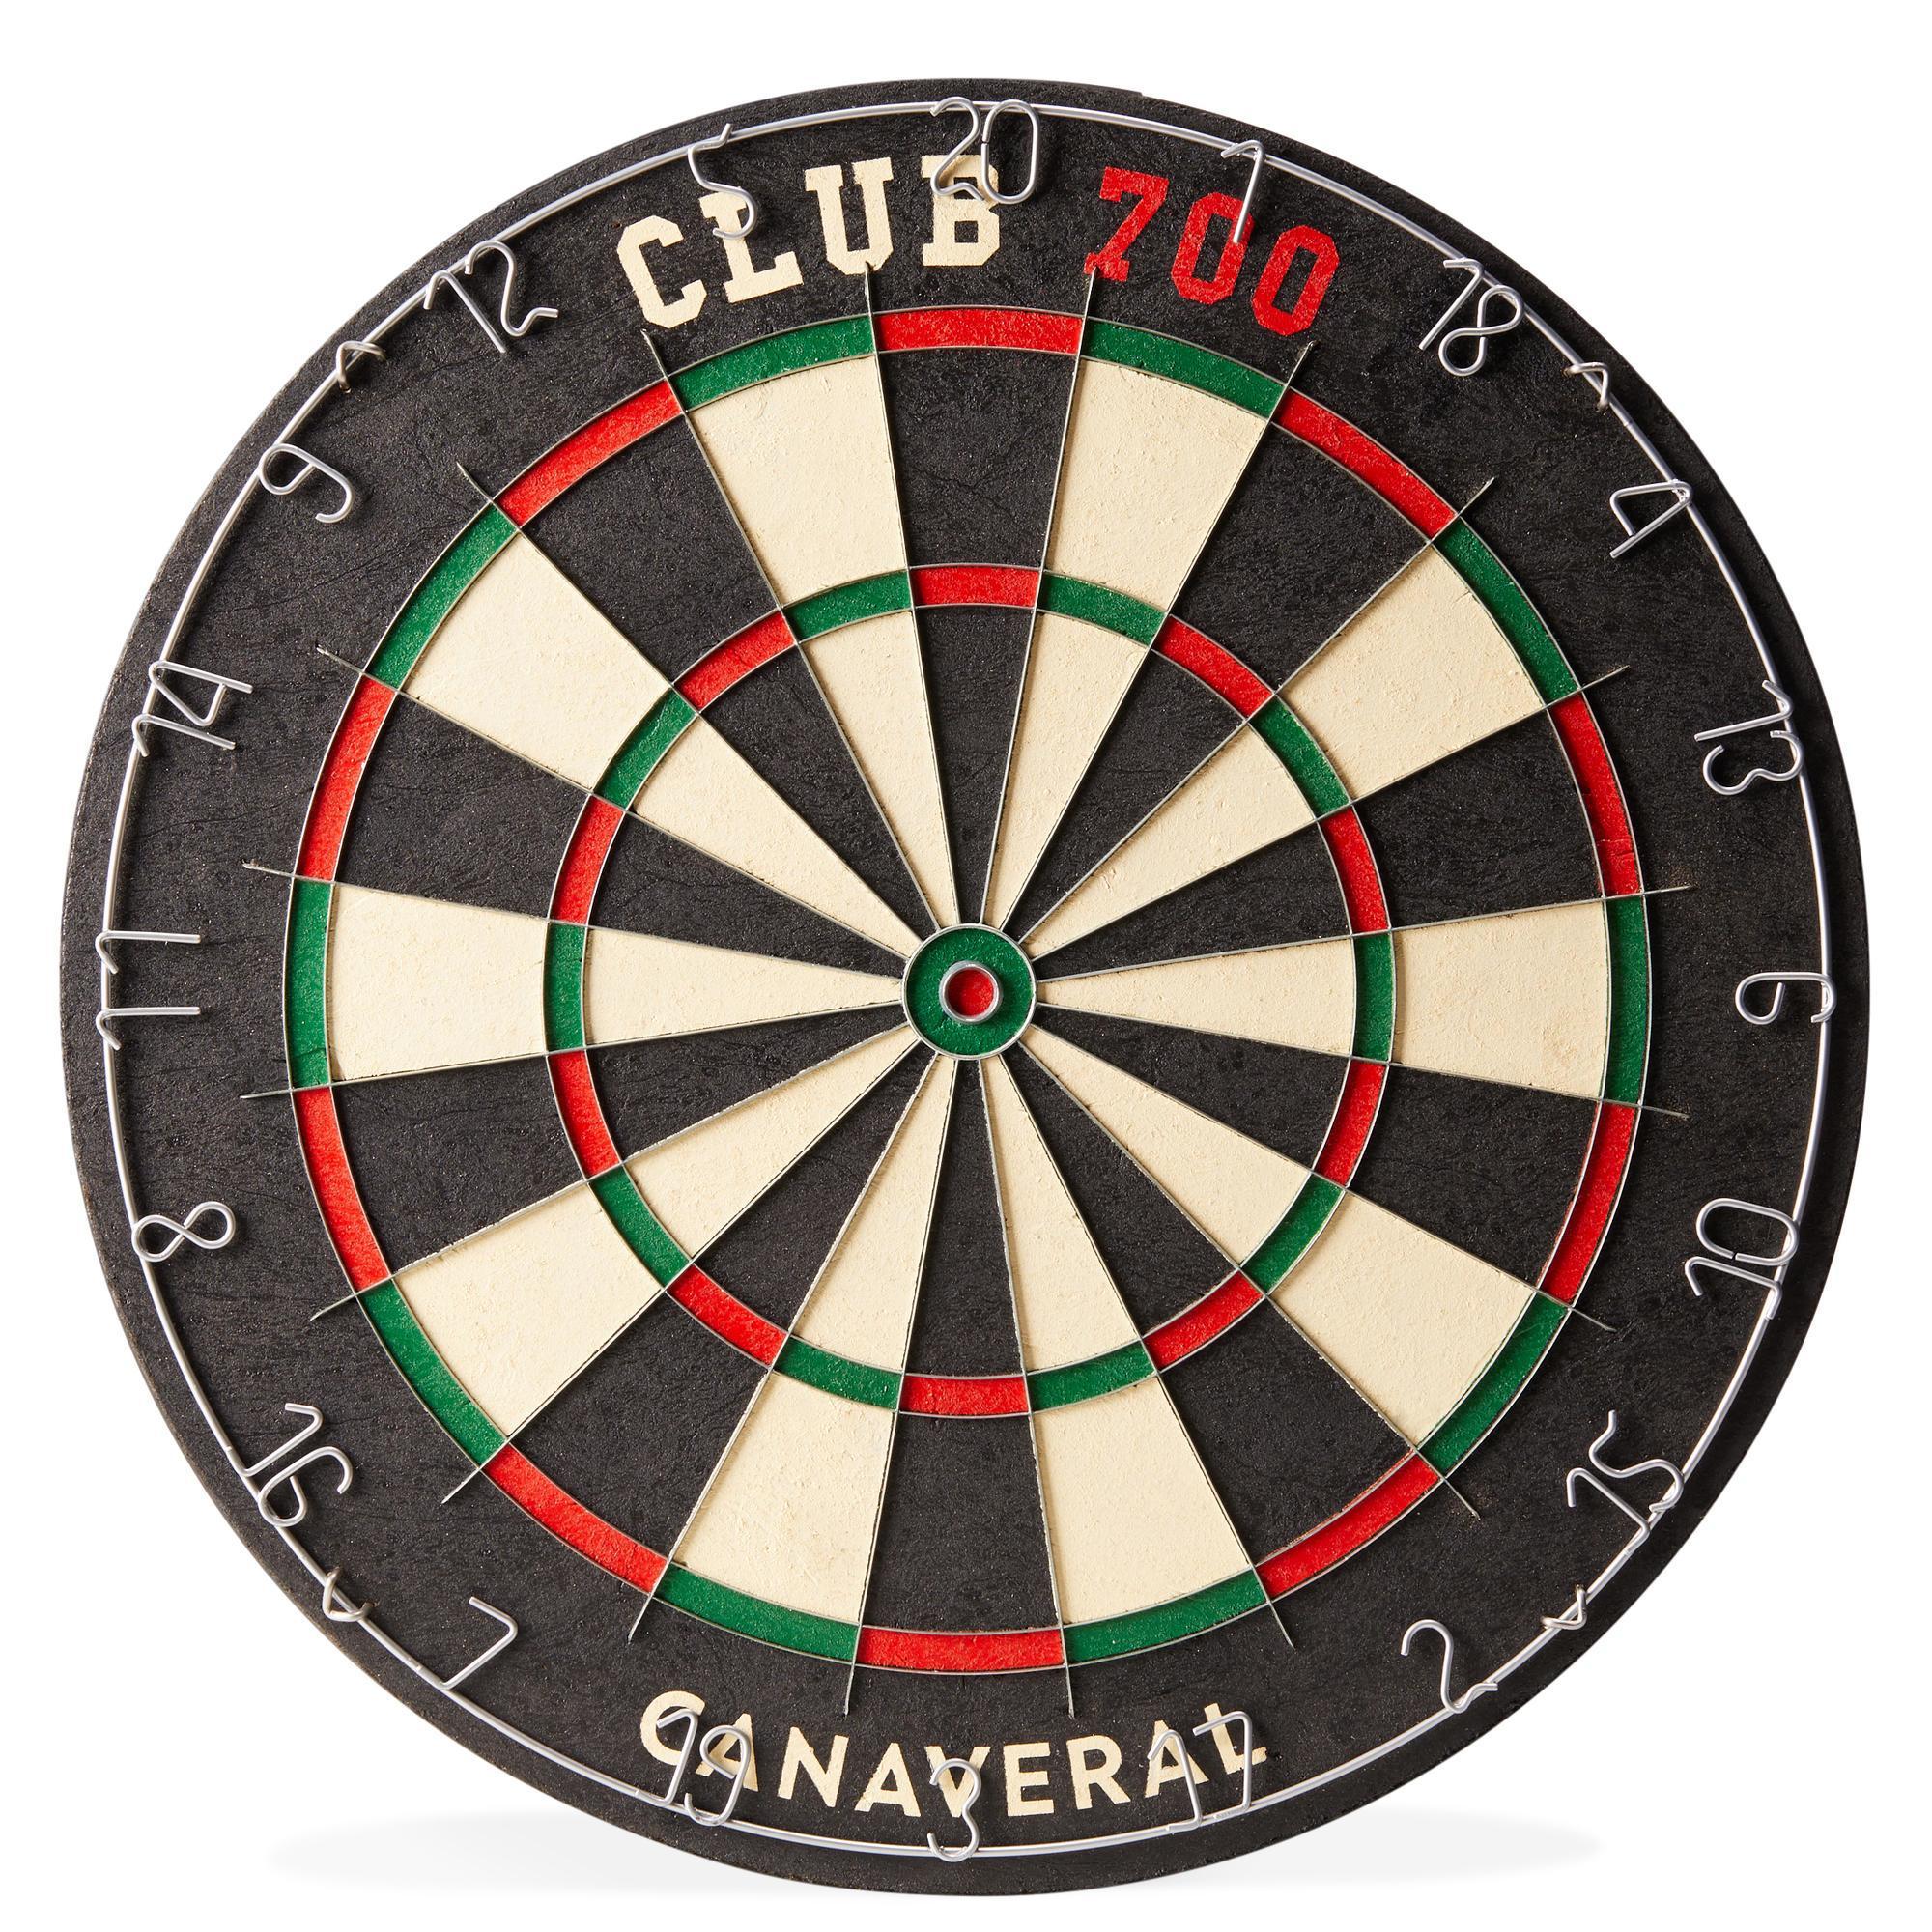 Ţinţă Clasică Darts Club 700 pentru săgeți din oțel 700 imagine 2022